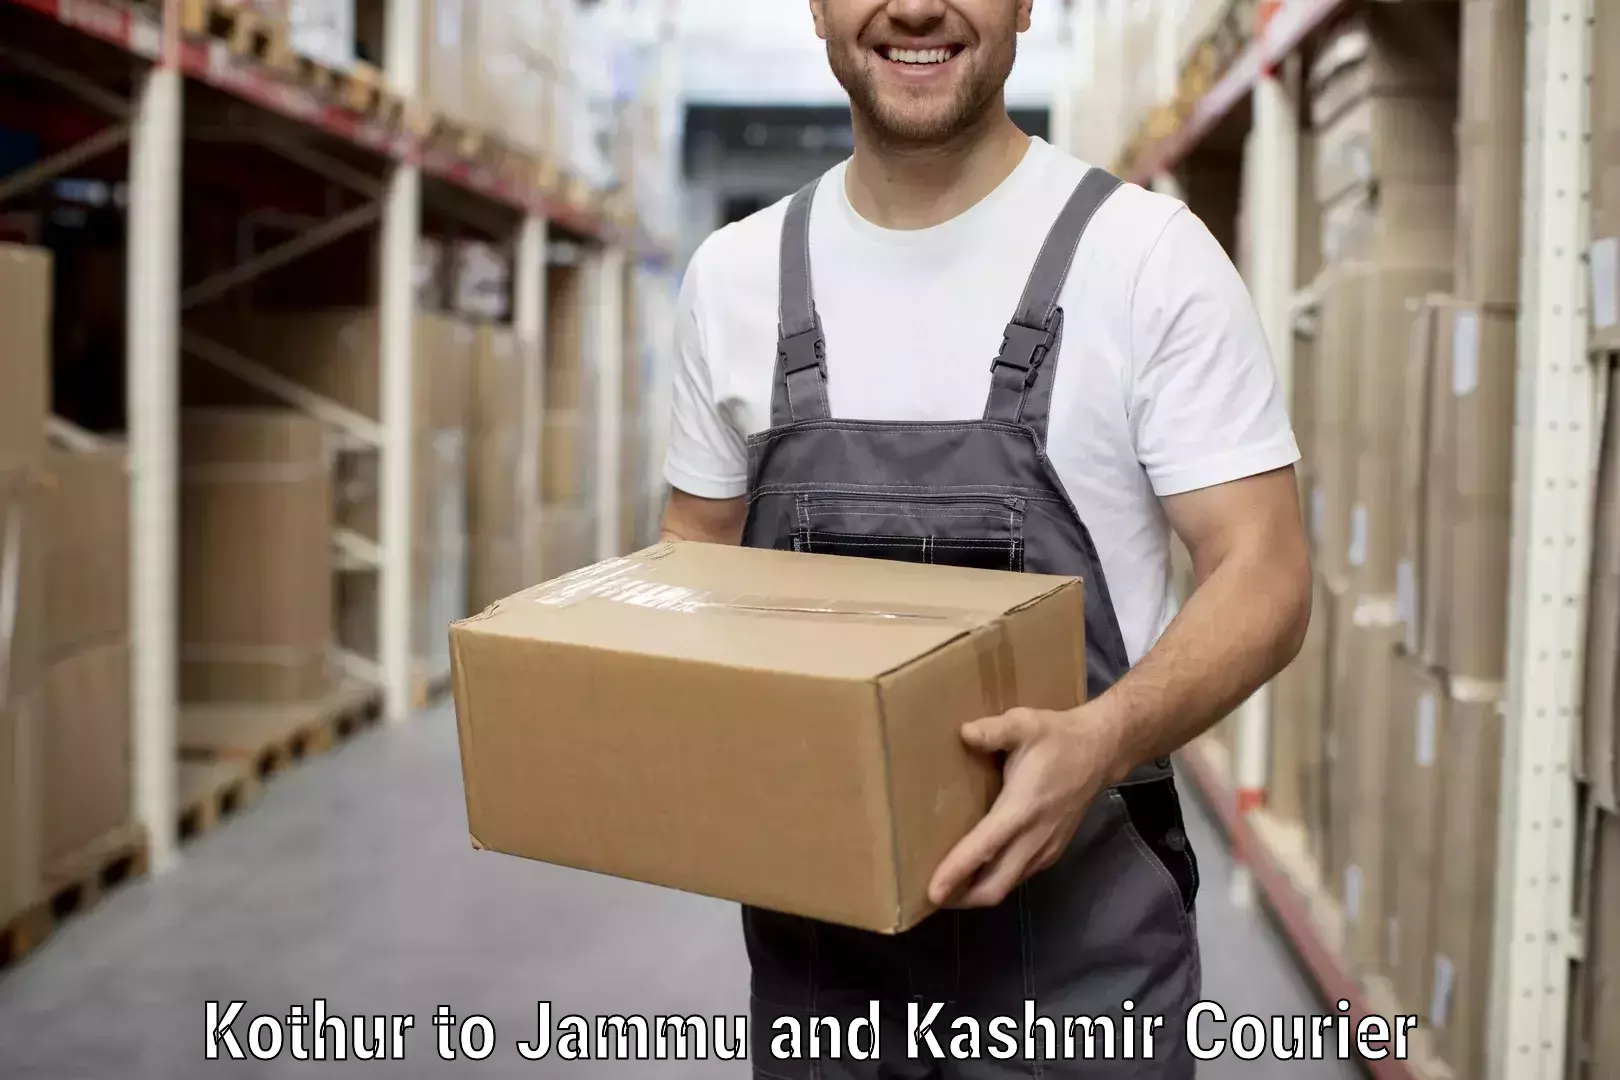 Affordable moving solutions Kothur to Srinagar Kashmir